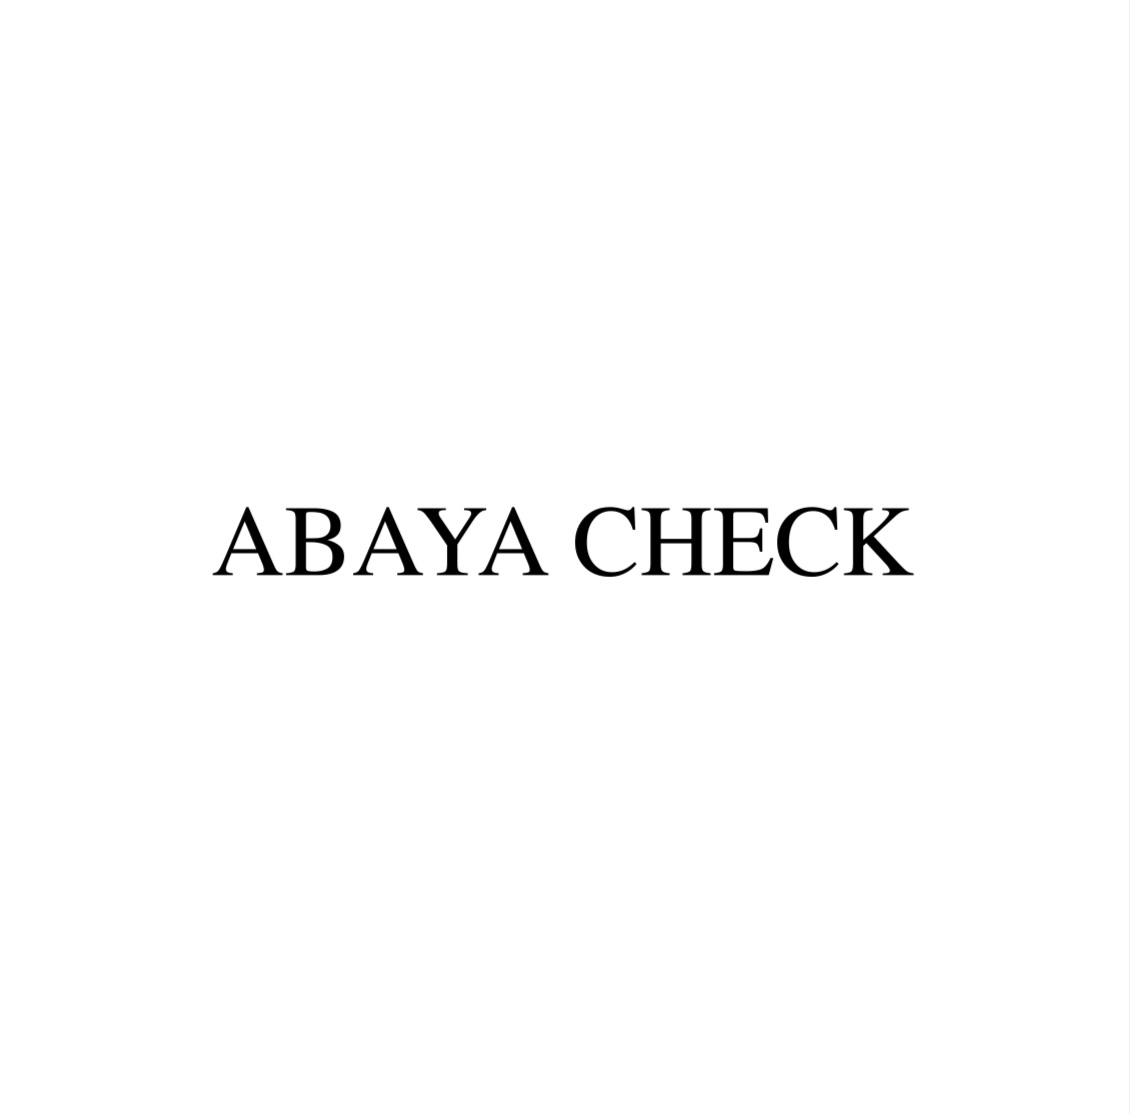 Abayacheck